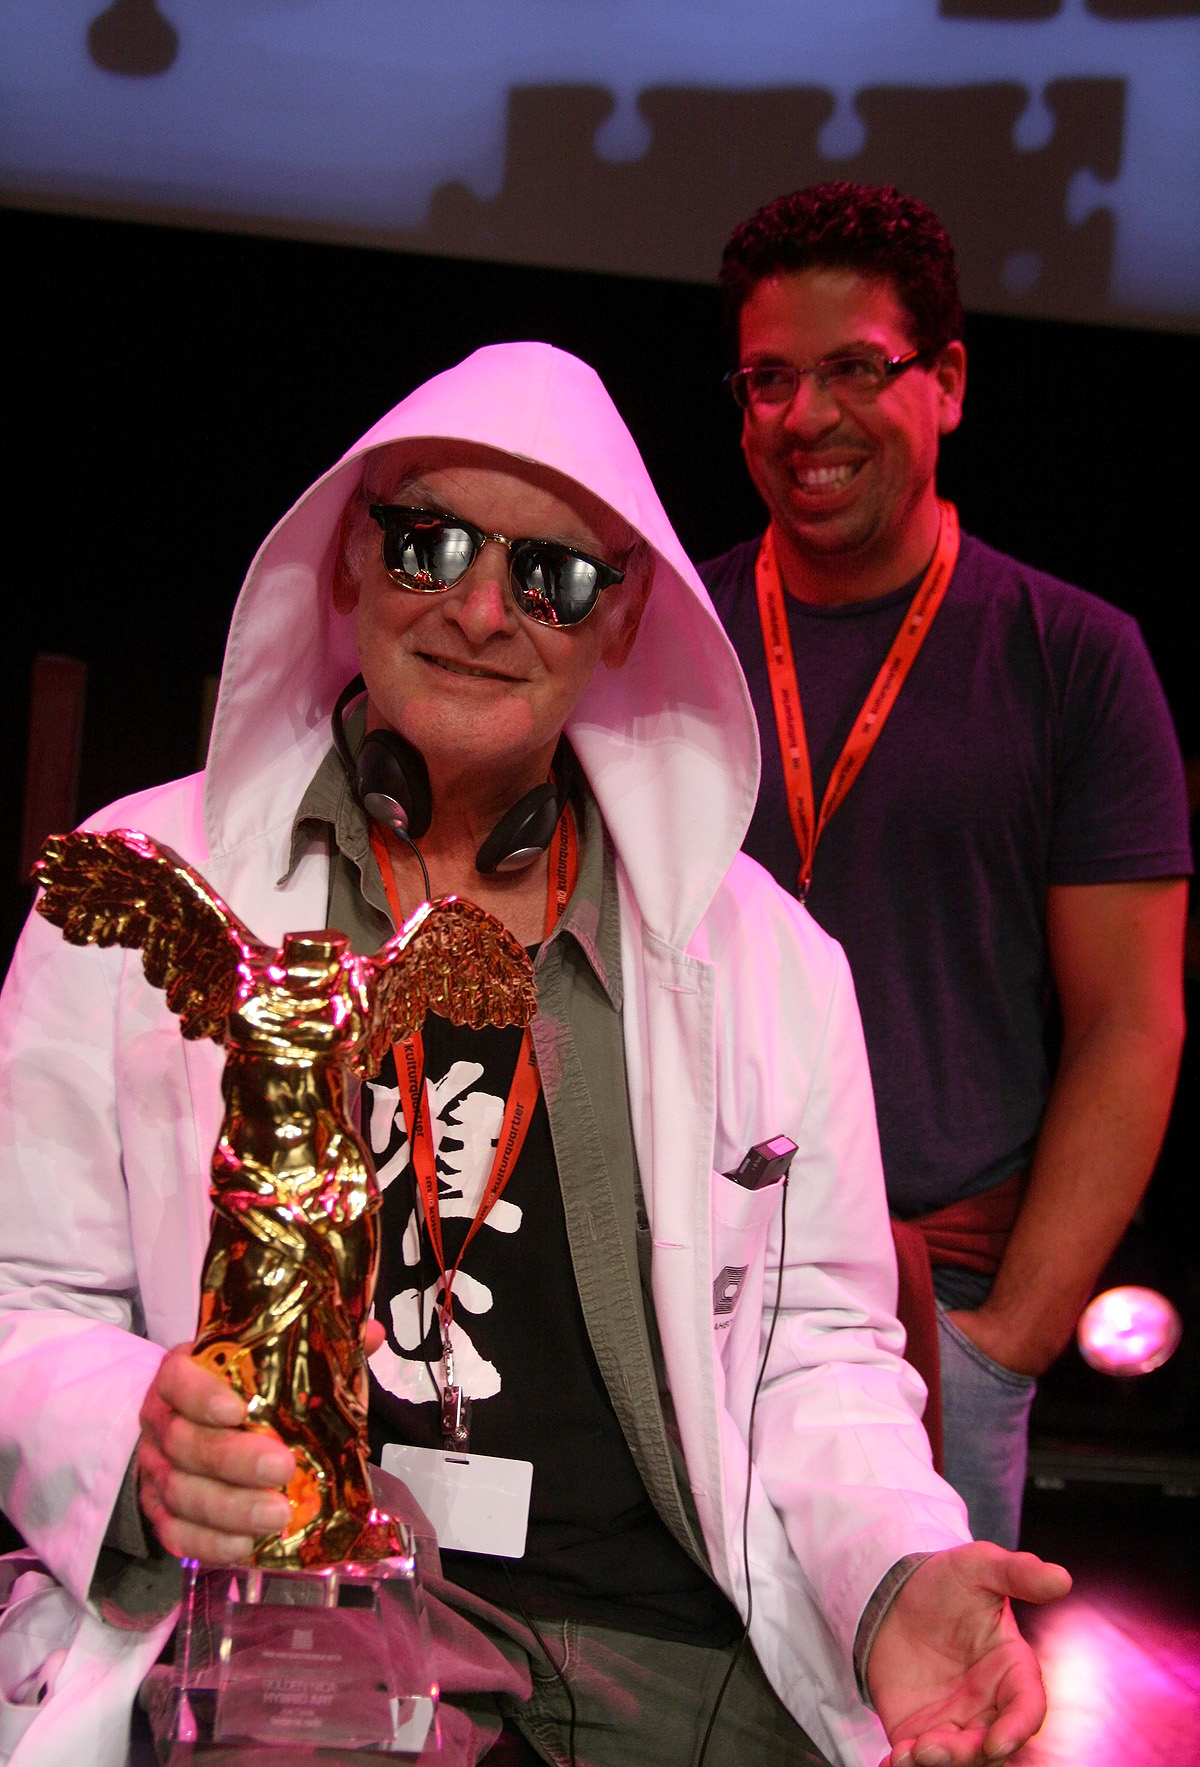 Joe Davis con la Golden nica del premio Ars Electronica 2012 nella categoria Hybrid Art per la sua Bacterial Radio